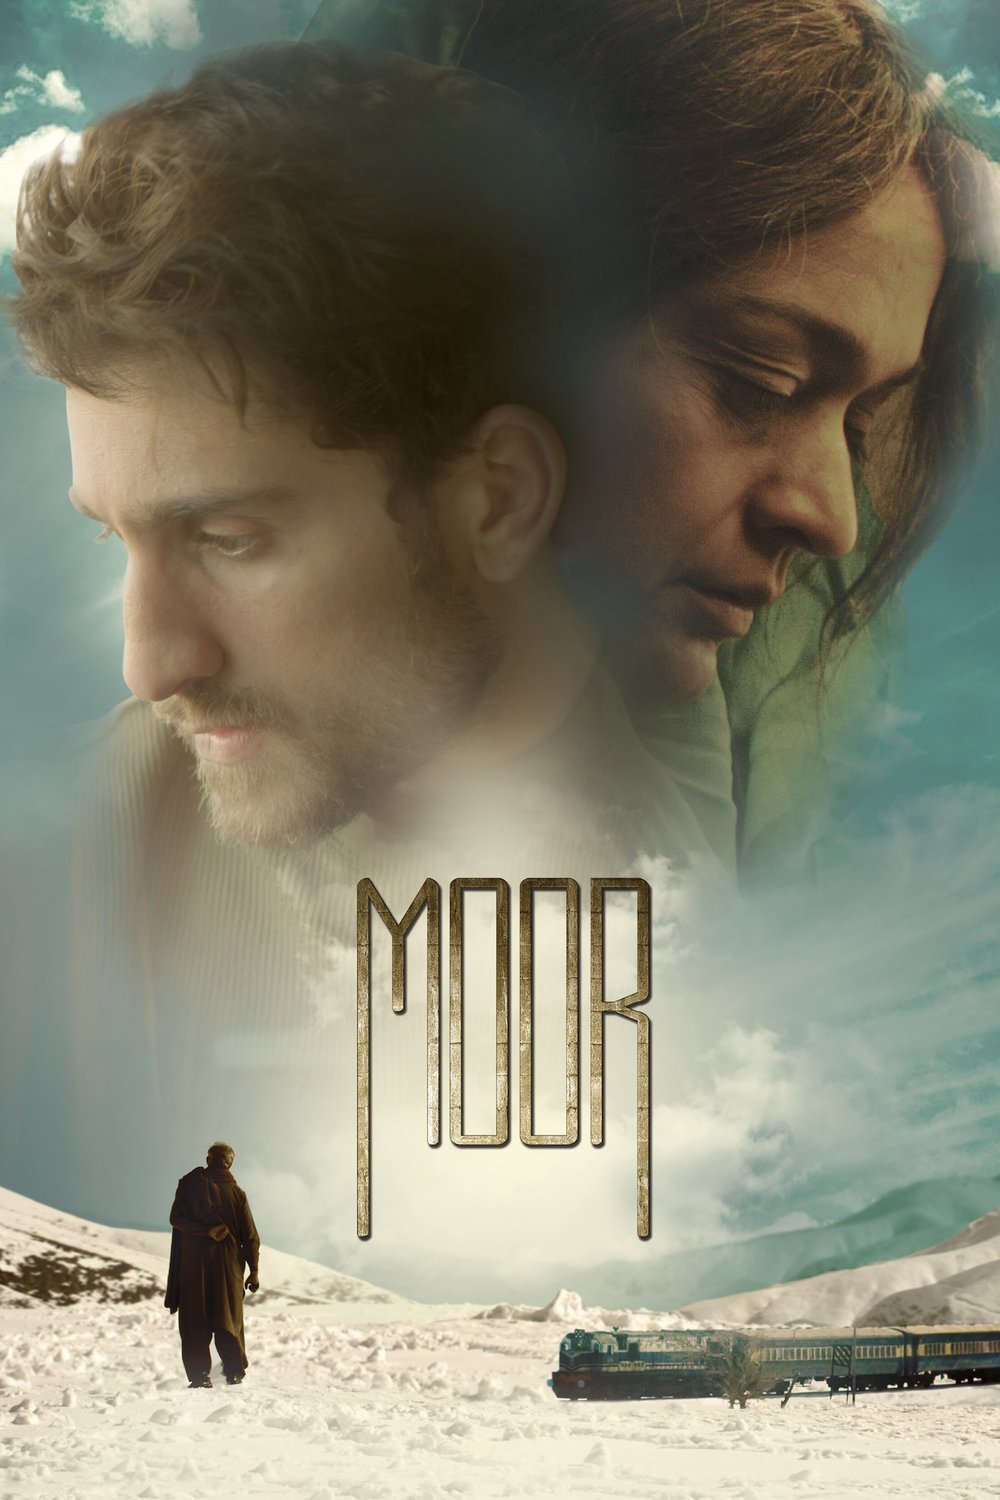 Urdu poster of the movie Moor